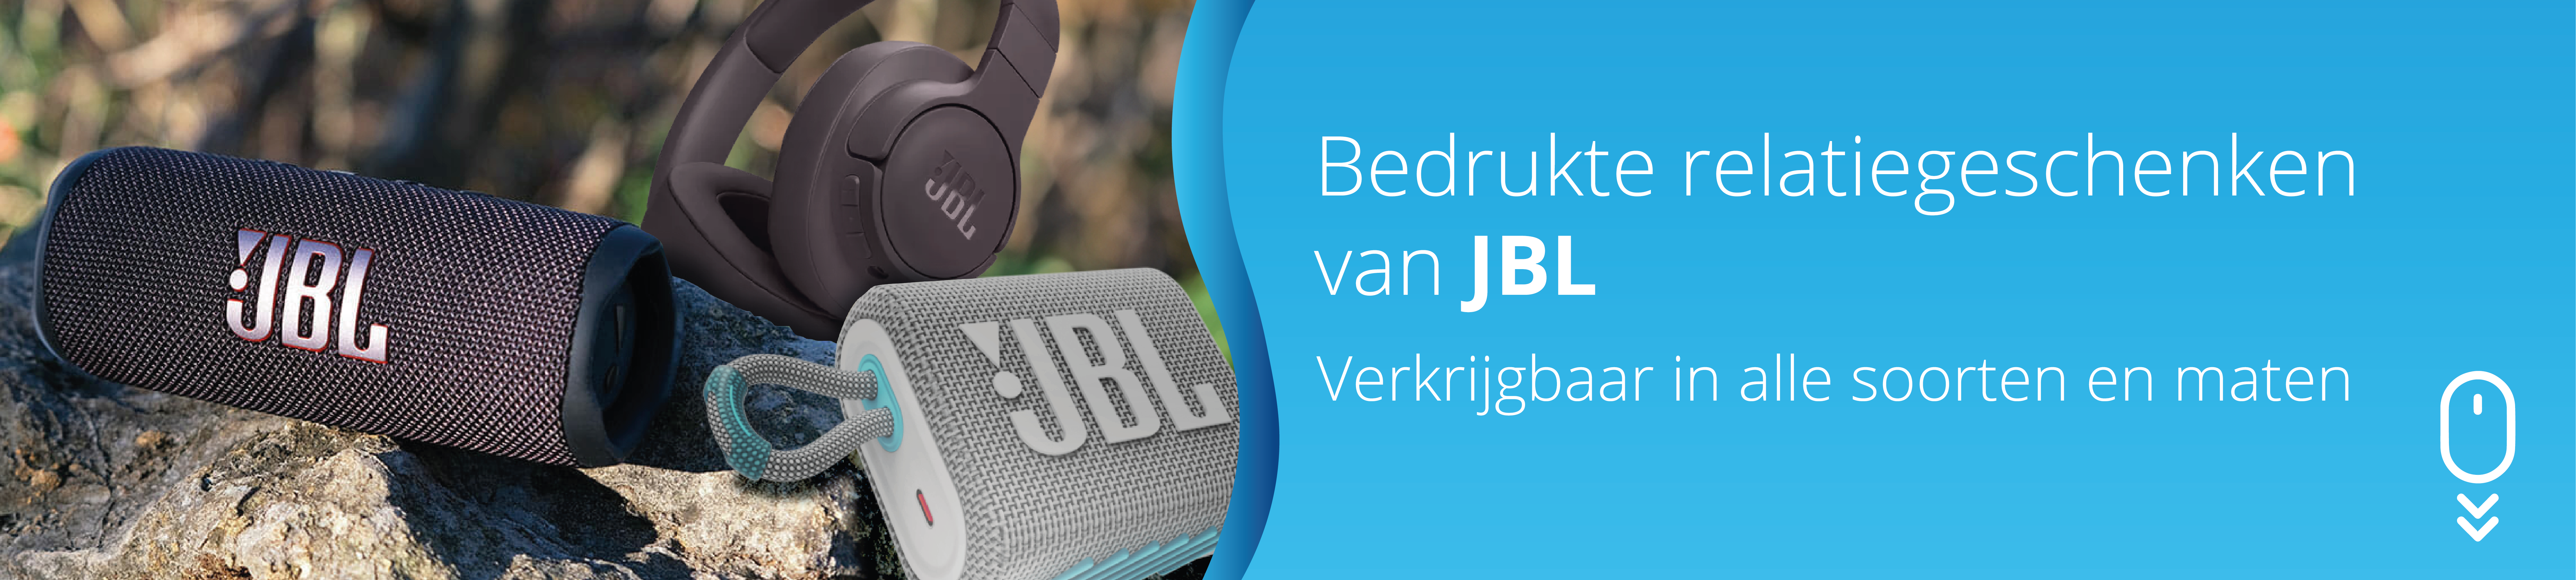 JBL-NL